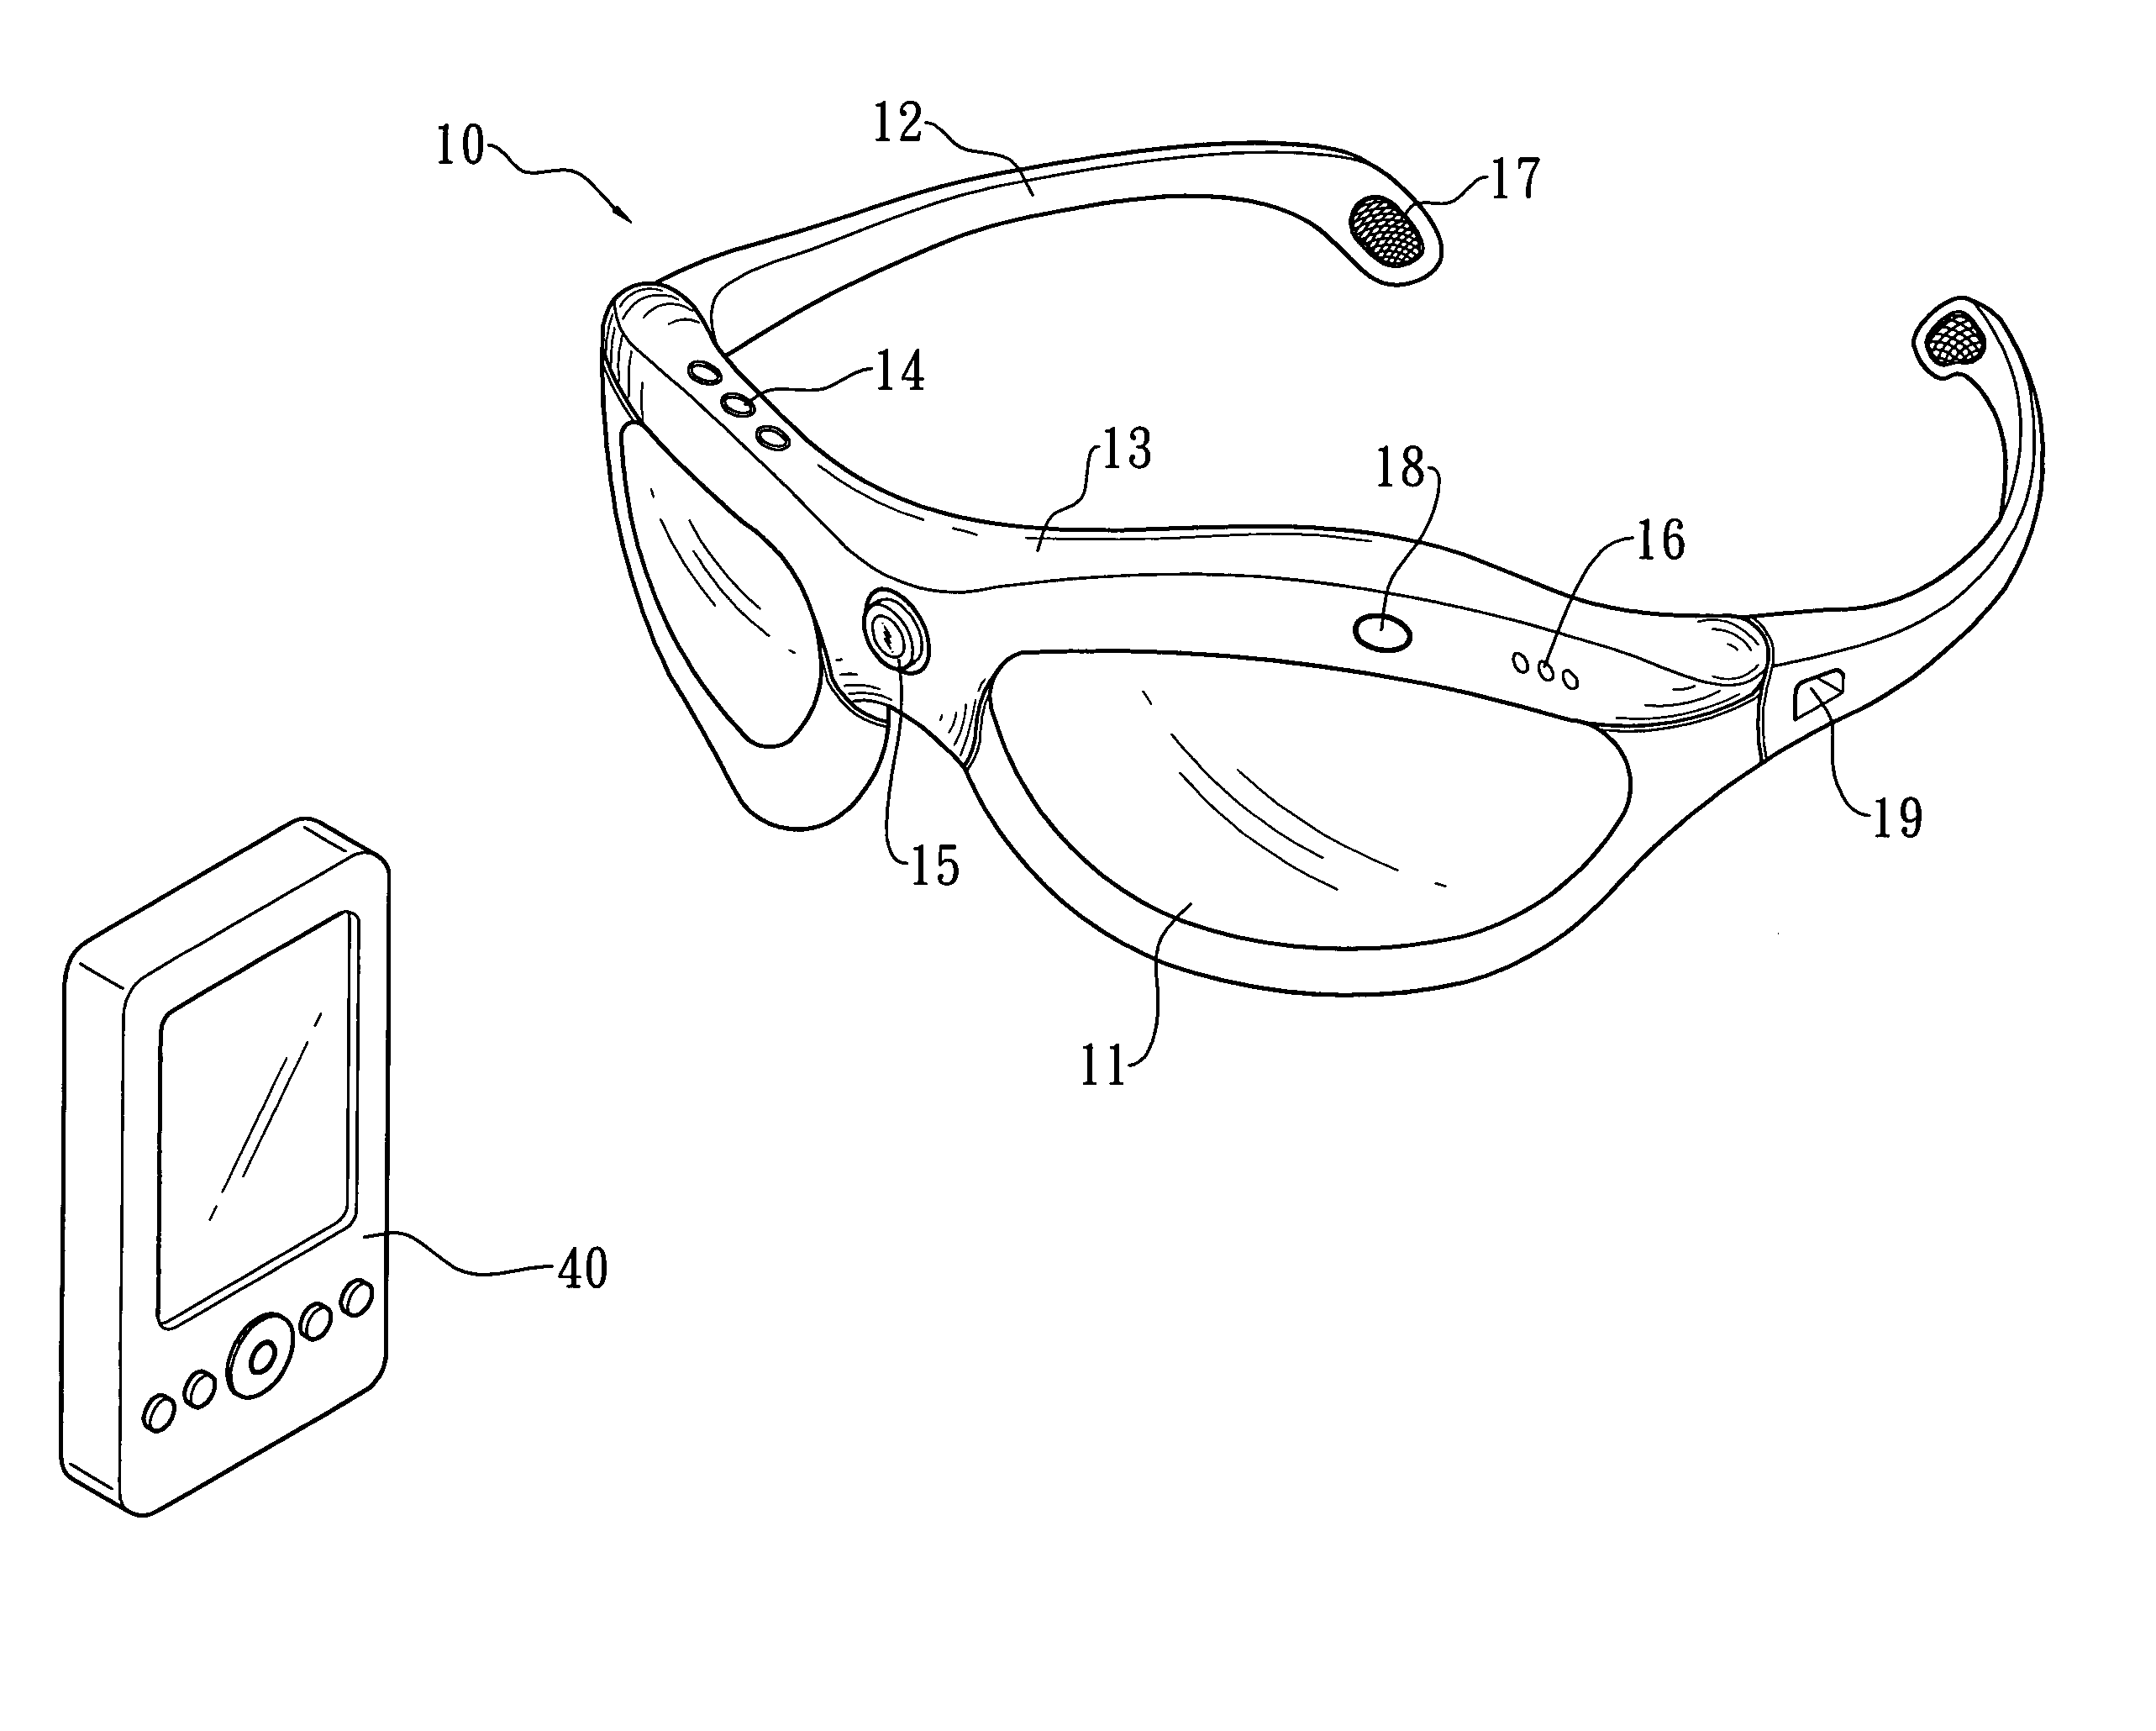 Glasses type audio-visual recording apparatus